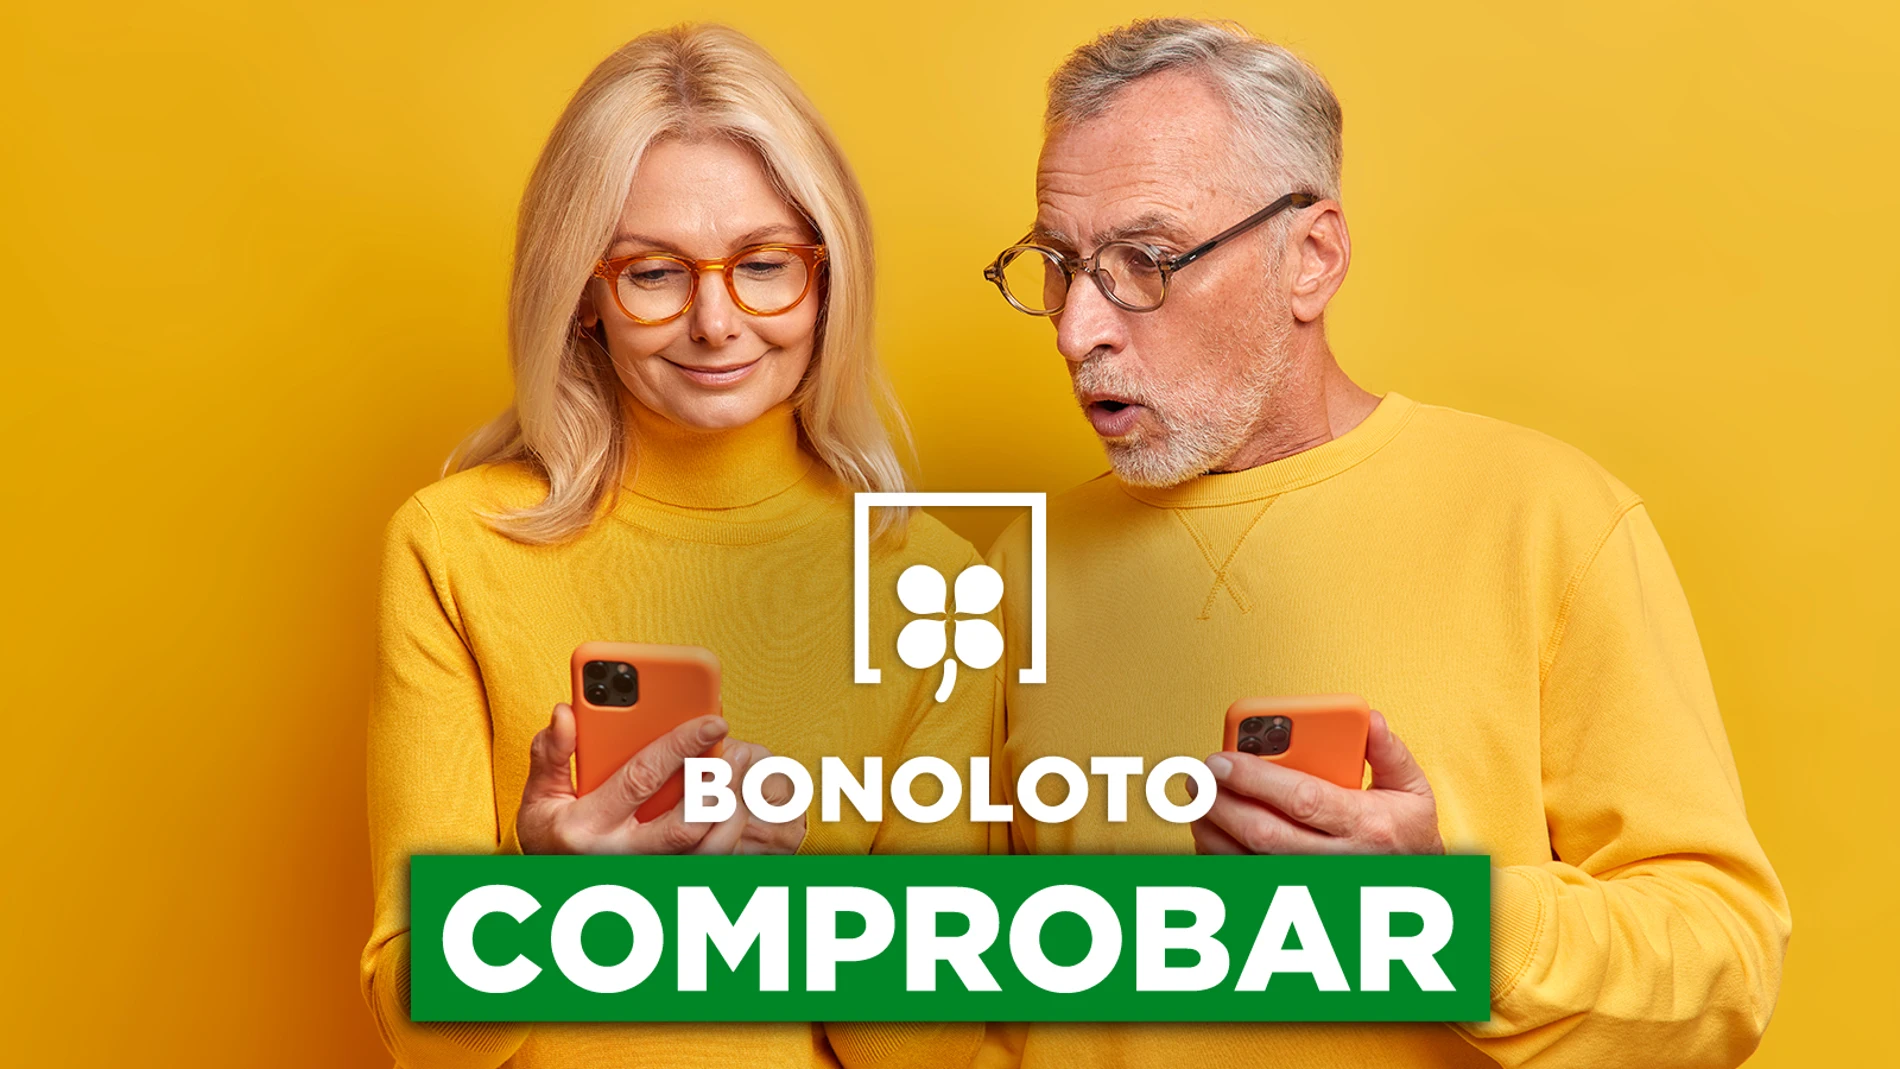 Bonoloto: comprobar hoy, viernes 28 de octubre de 2022